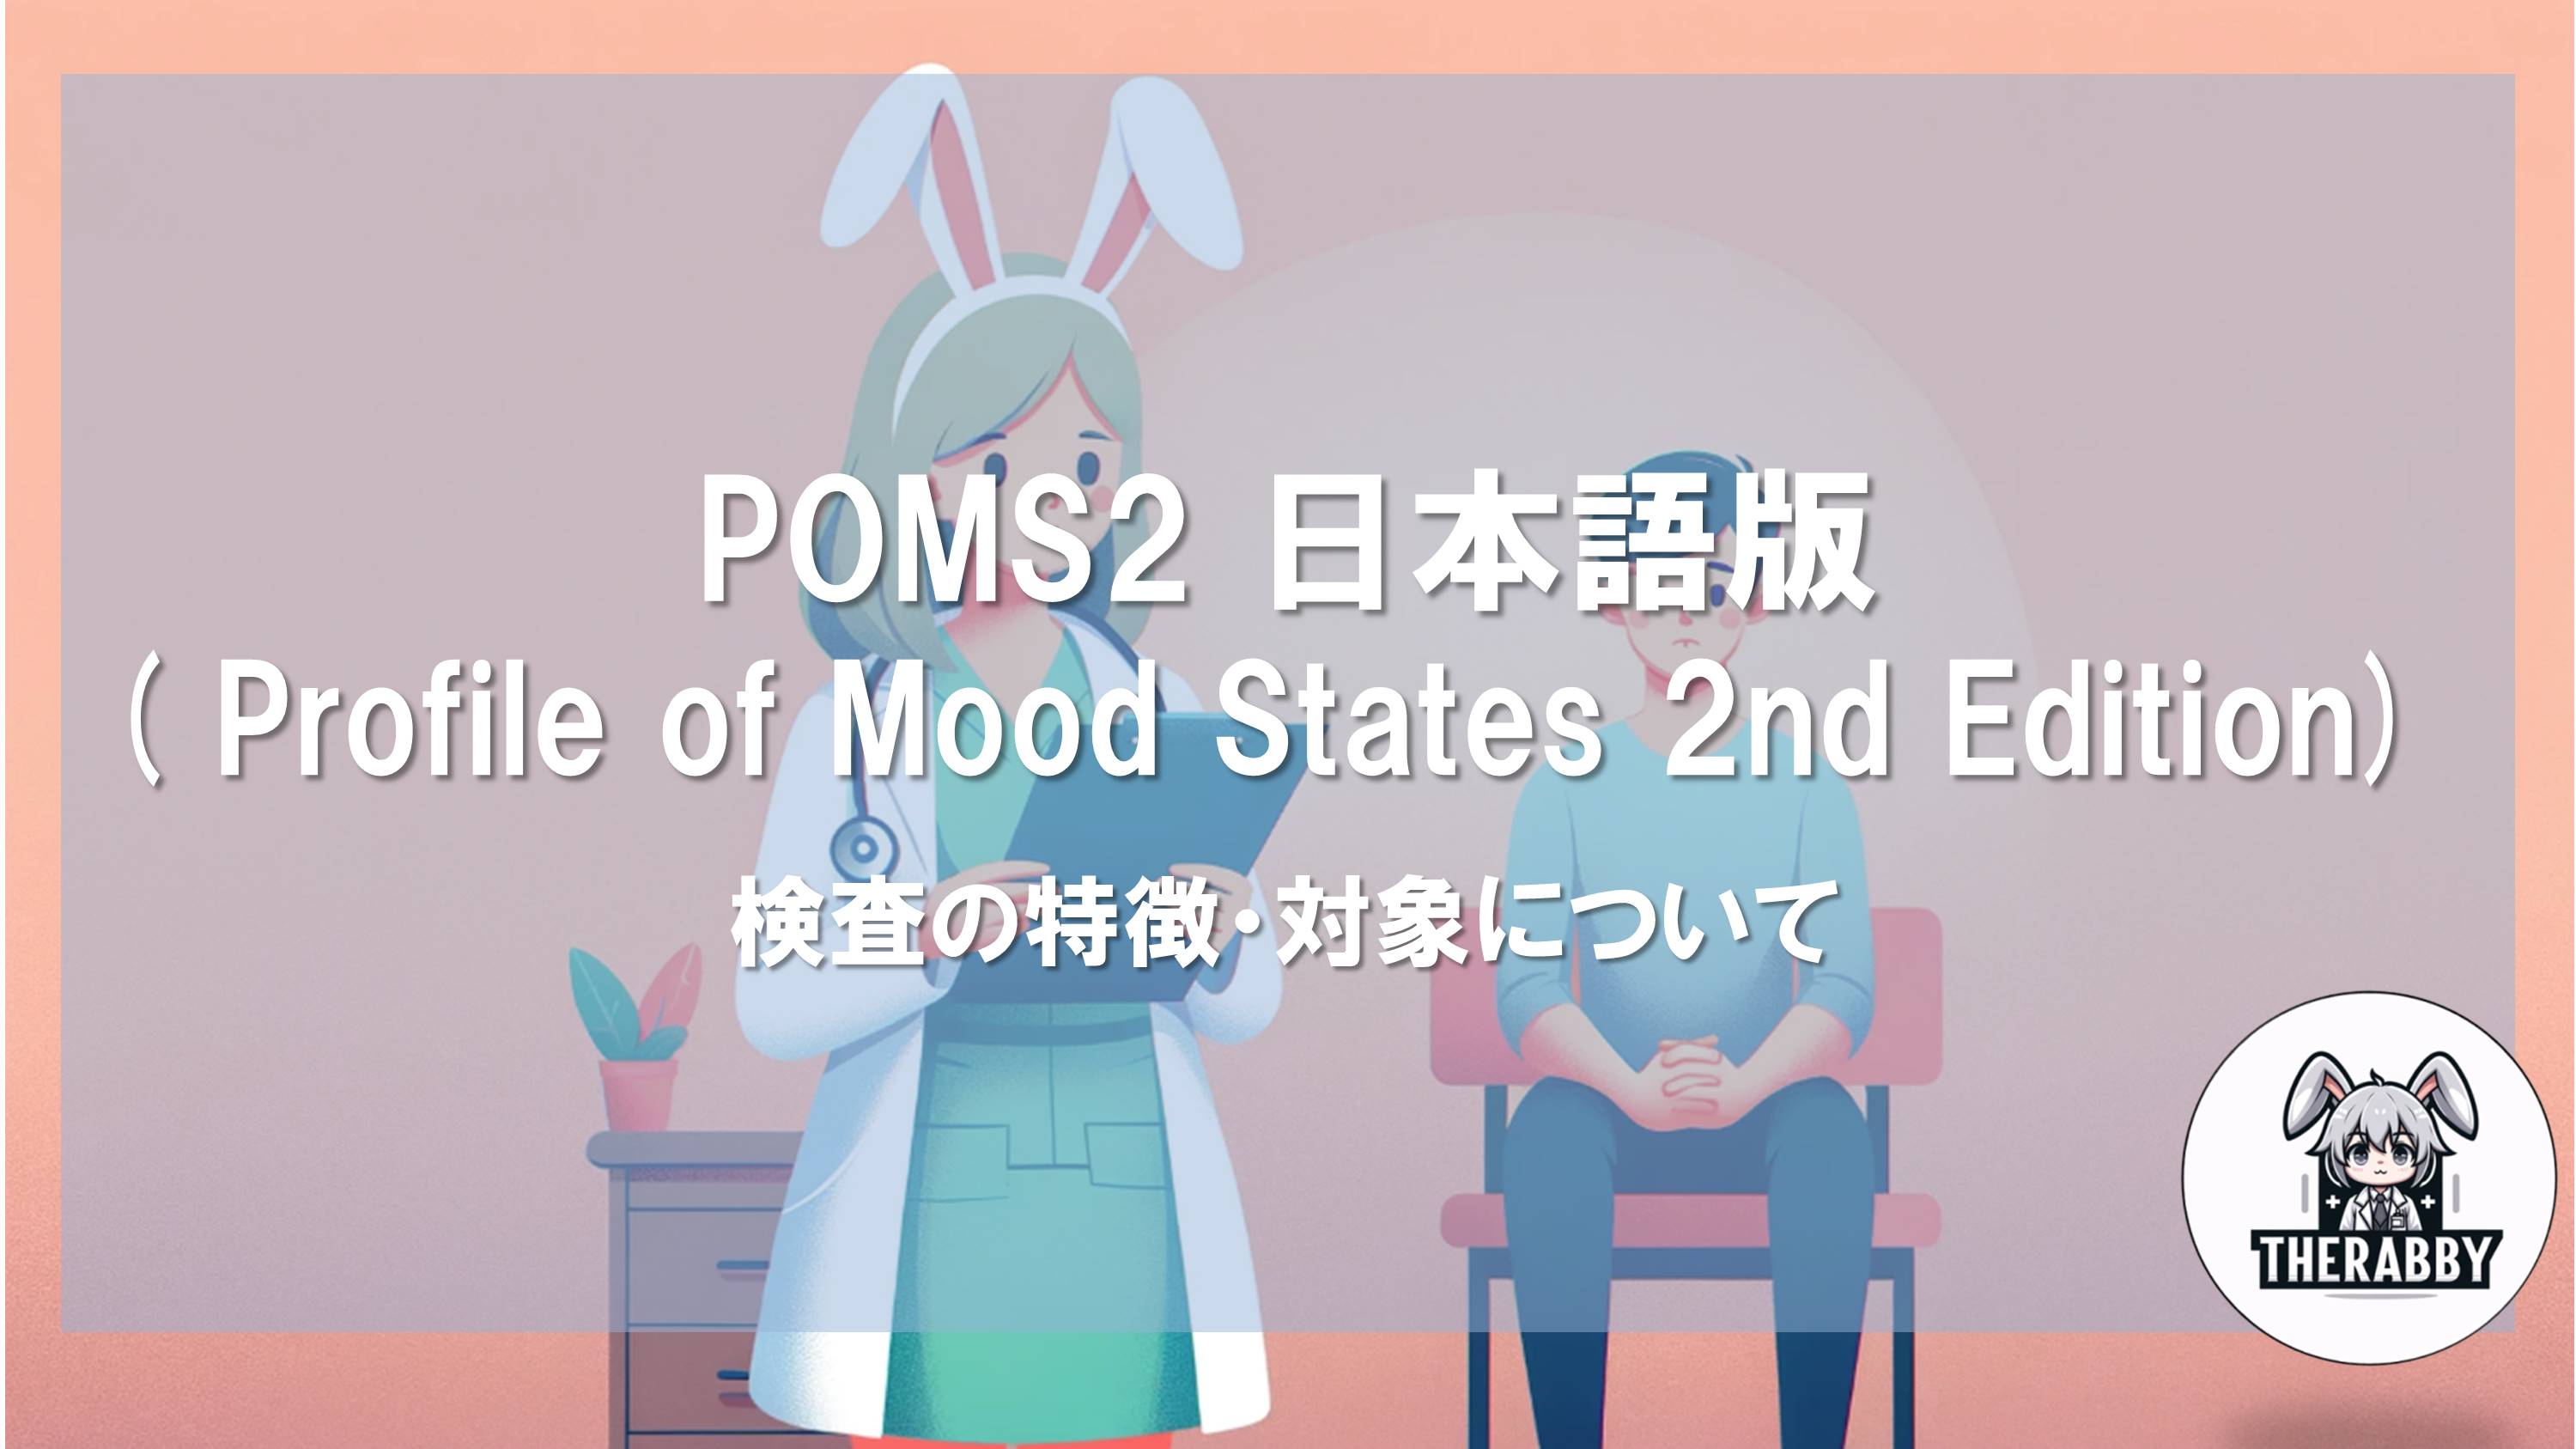 POMS2 日本語版( Profile of Mood States 2nd Edition) - 検査の特徴・対象について